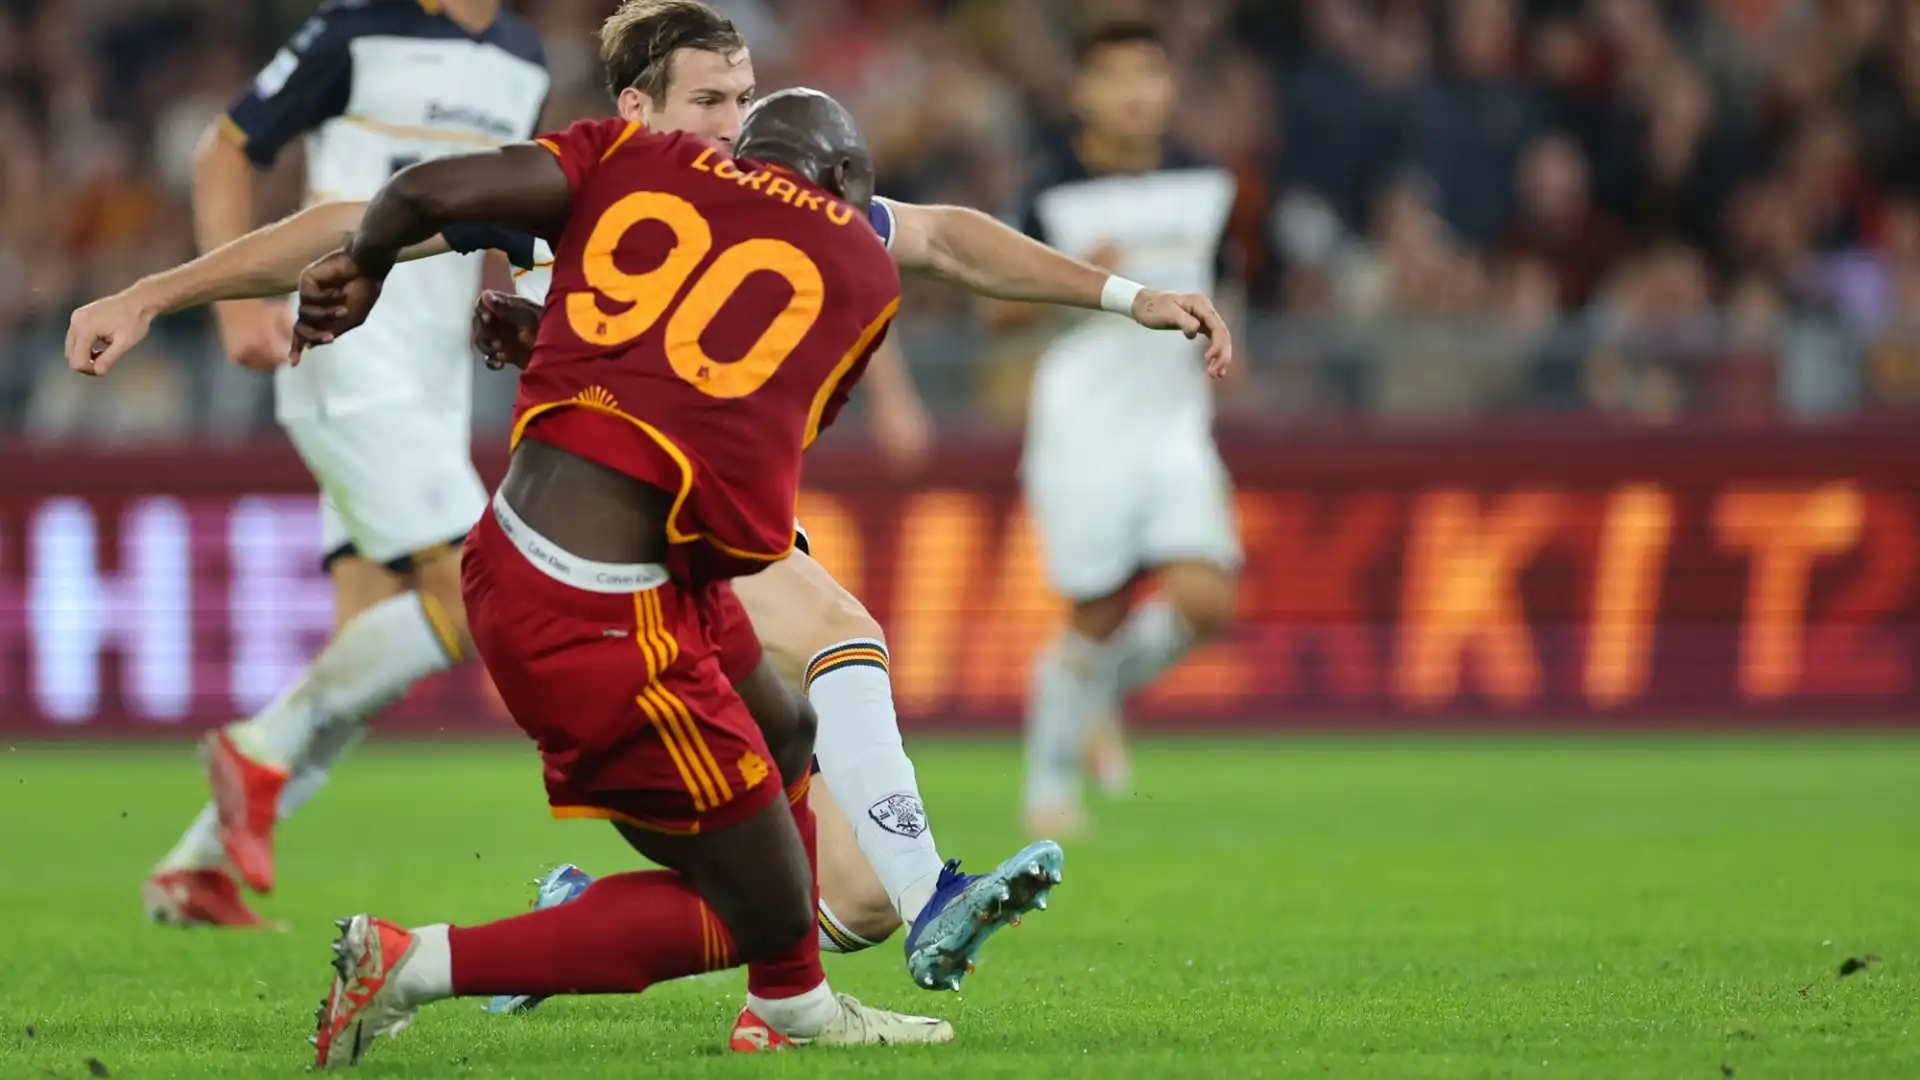 L'attaccante belga dopo aver sbagliato un rigore nel primo tempo si riscatta ampiamente nella ripresa della partita contro il Lecce